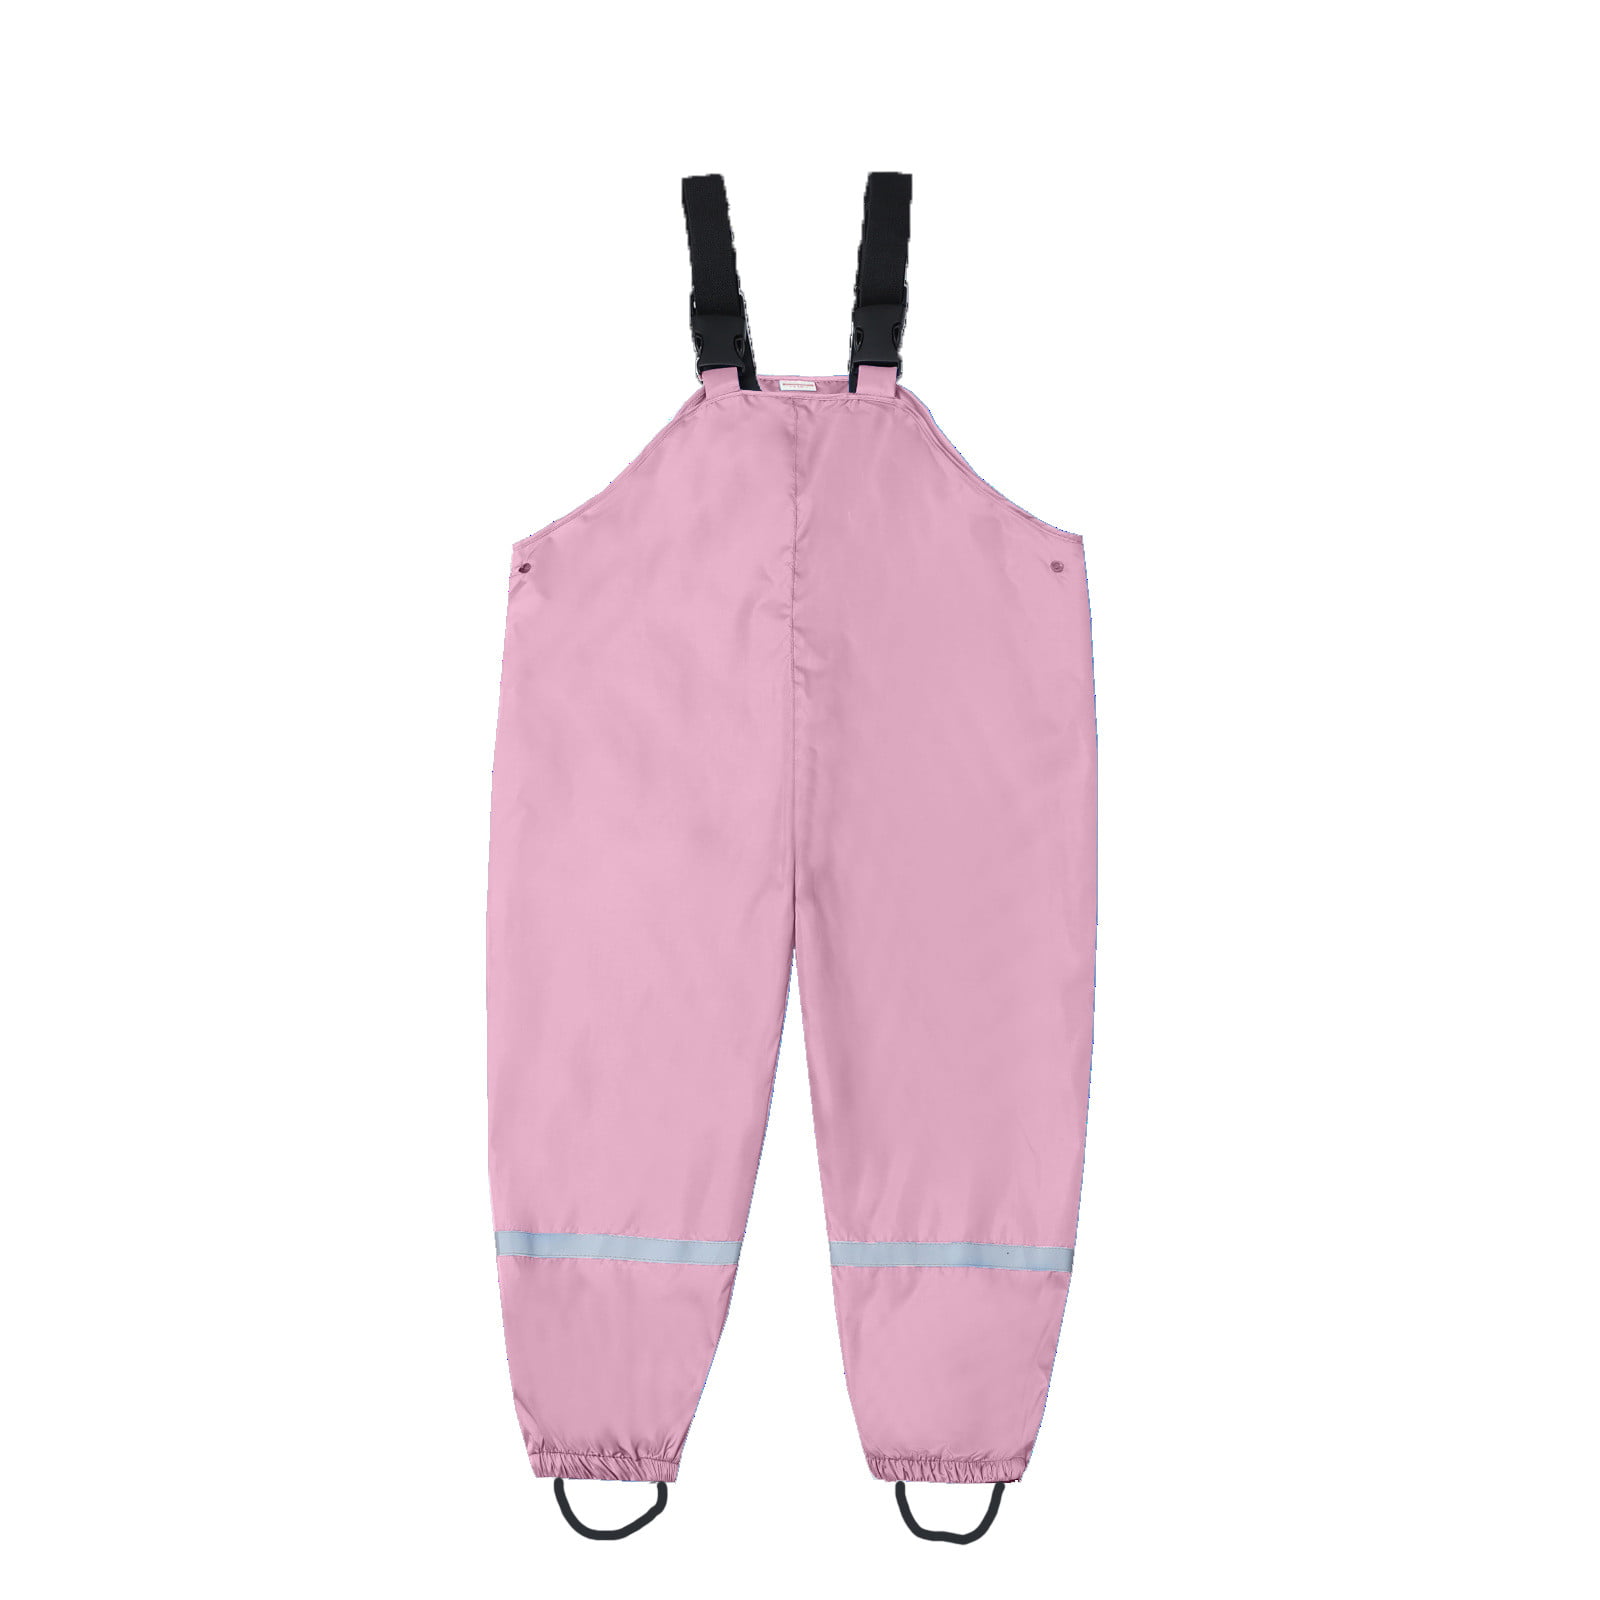 Baby girl skirt dress Children's One-piece Rain Pants Waterproof And Outdoor Suspenders CHMORA - Walmart.com